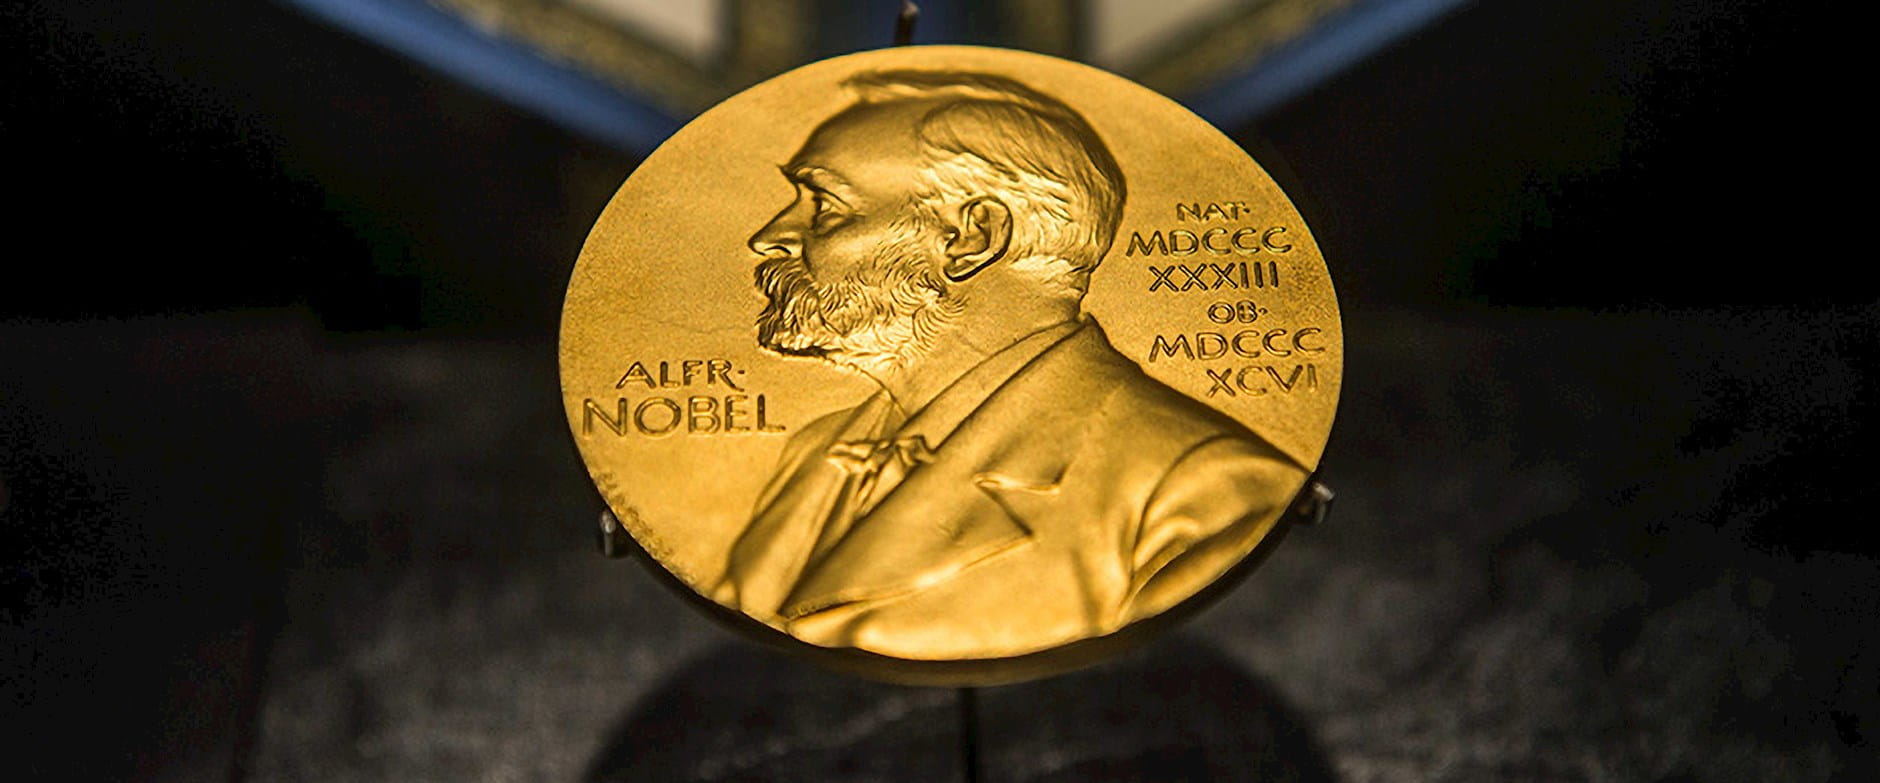 Nobel prize medal centered on a dark background